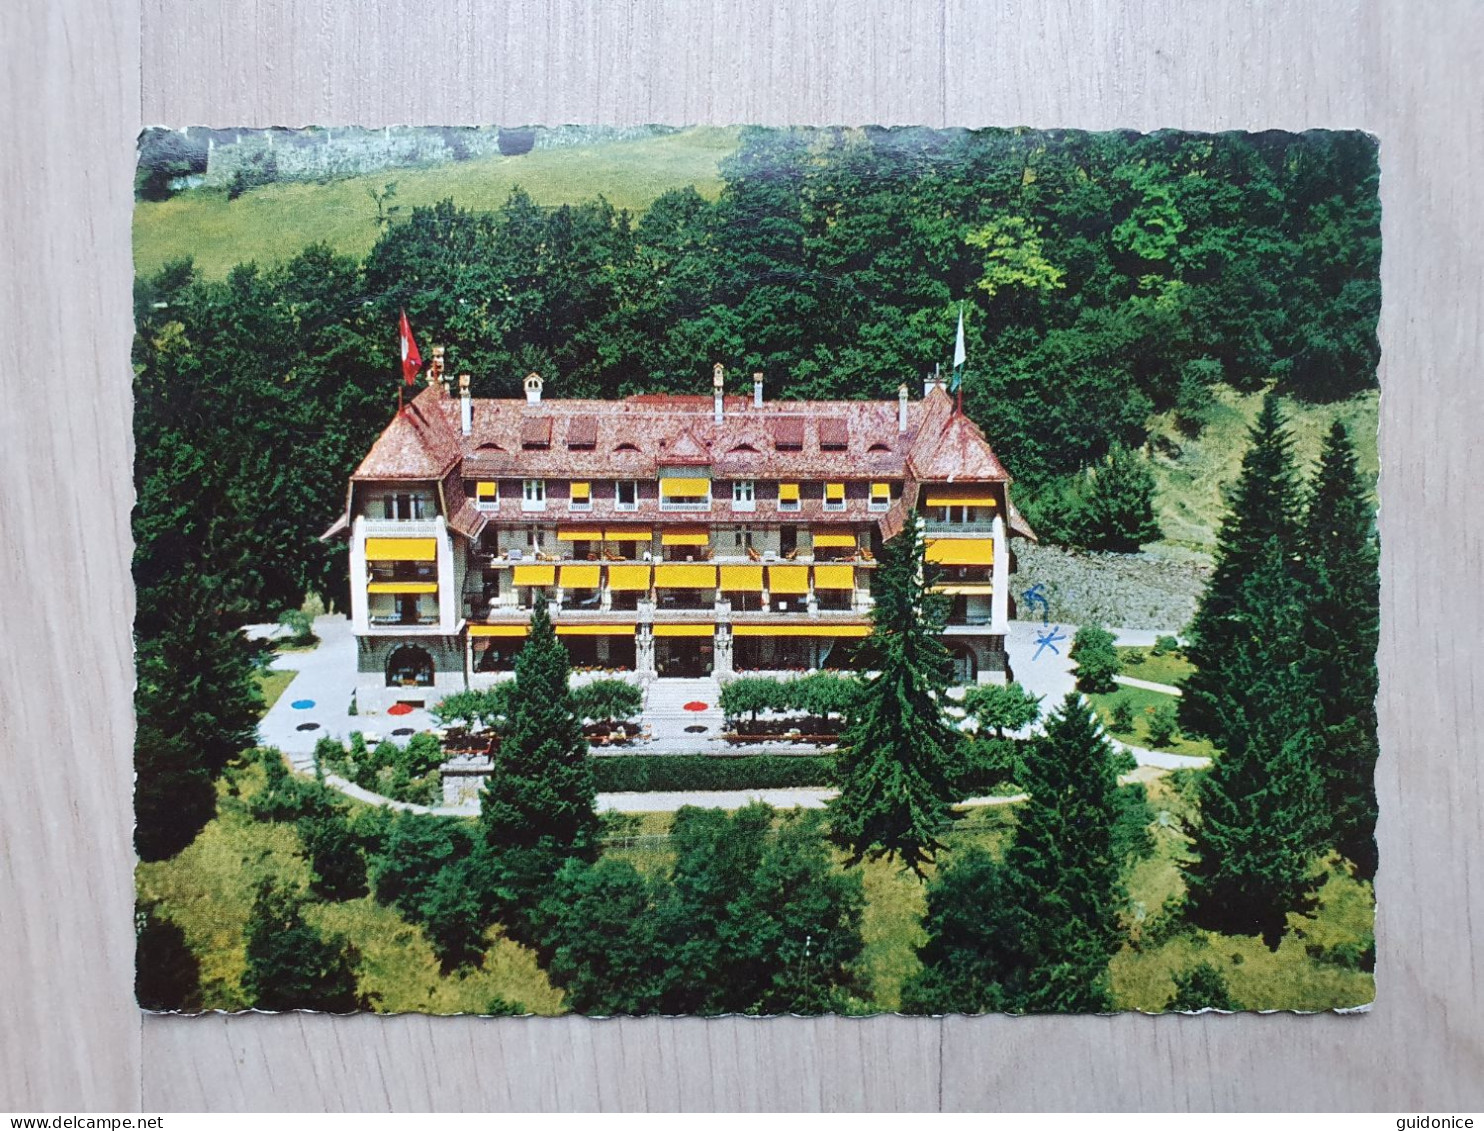 Ansichtskarte - Schweiz - Chardonne - Hotel Mon Repos (1960er) - Seltene Frankatur (Eilsendung) - Chardonne